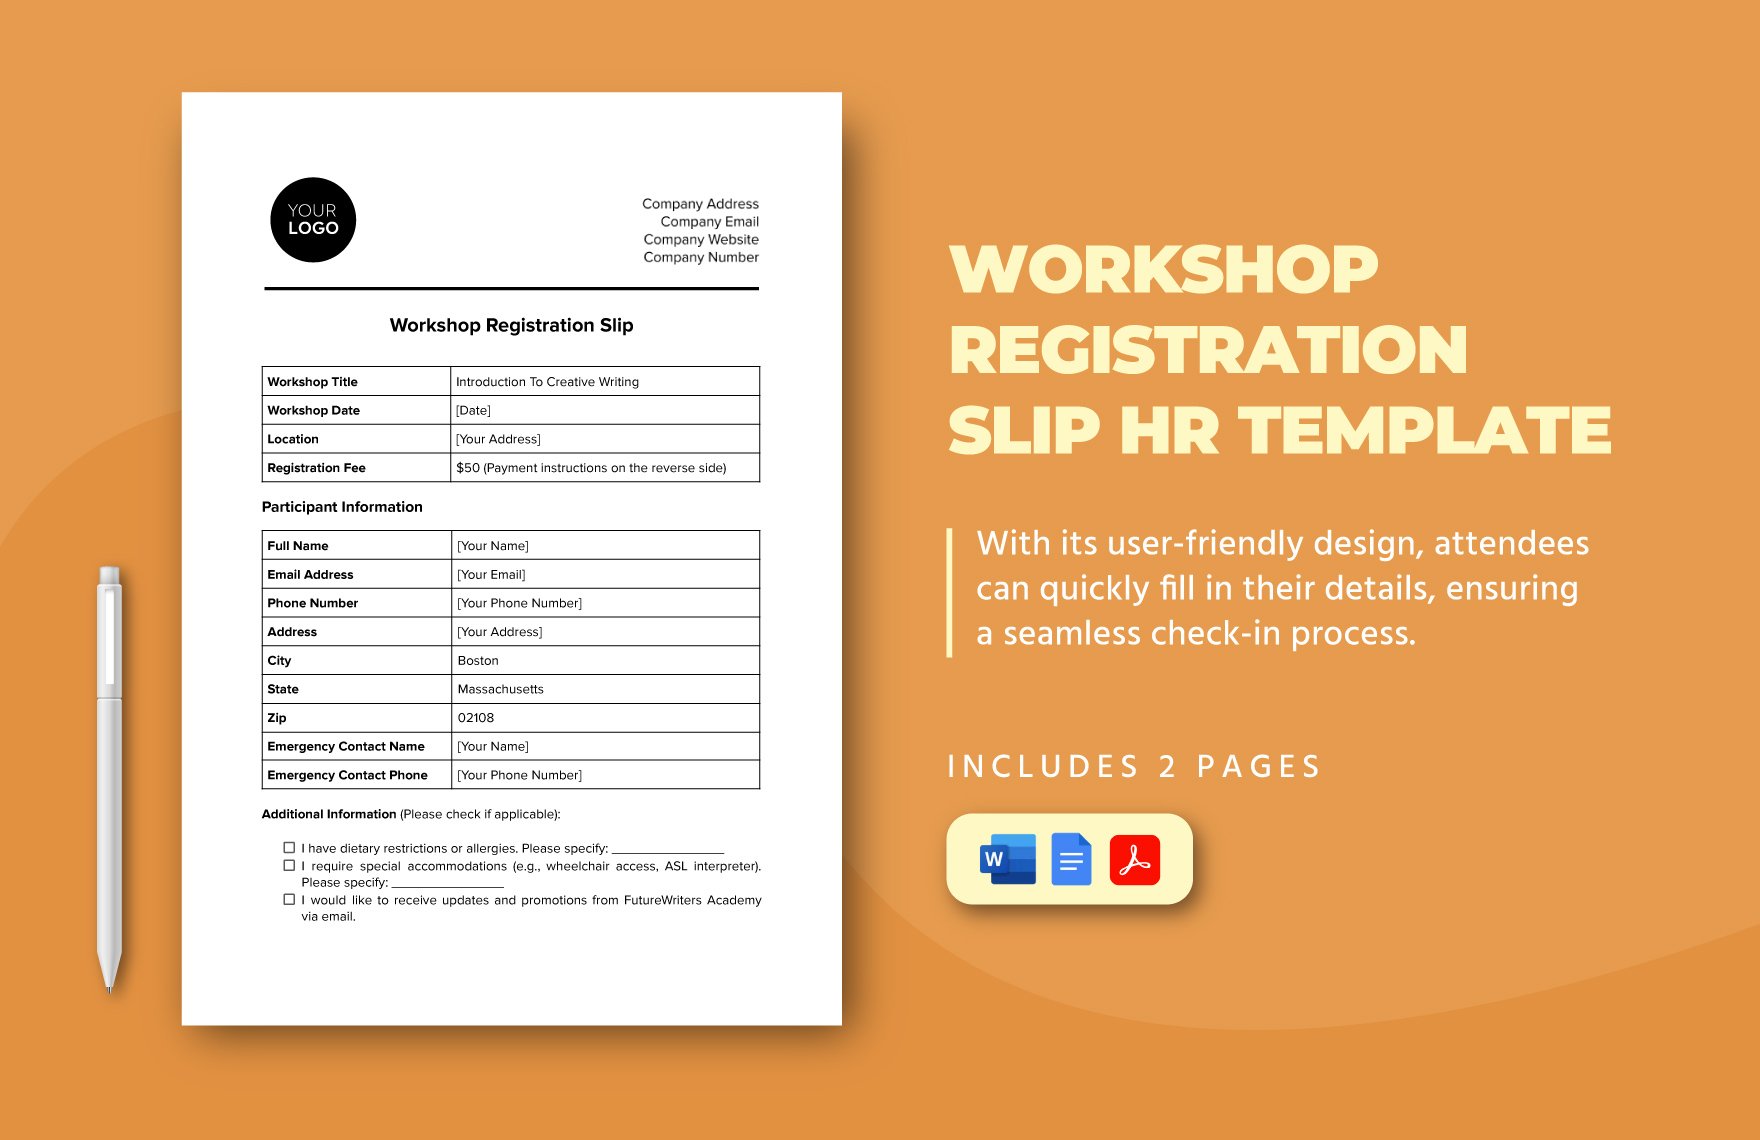 Workshop Registration Slip HR Template in Word, Google Docs, PDF